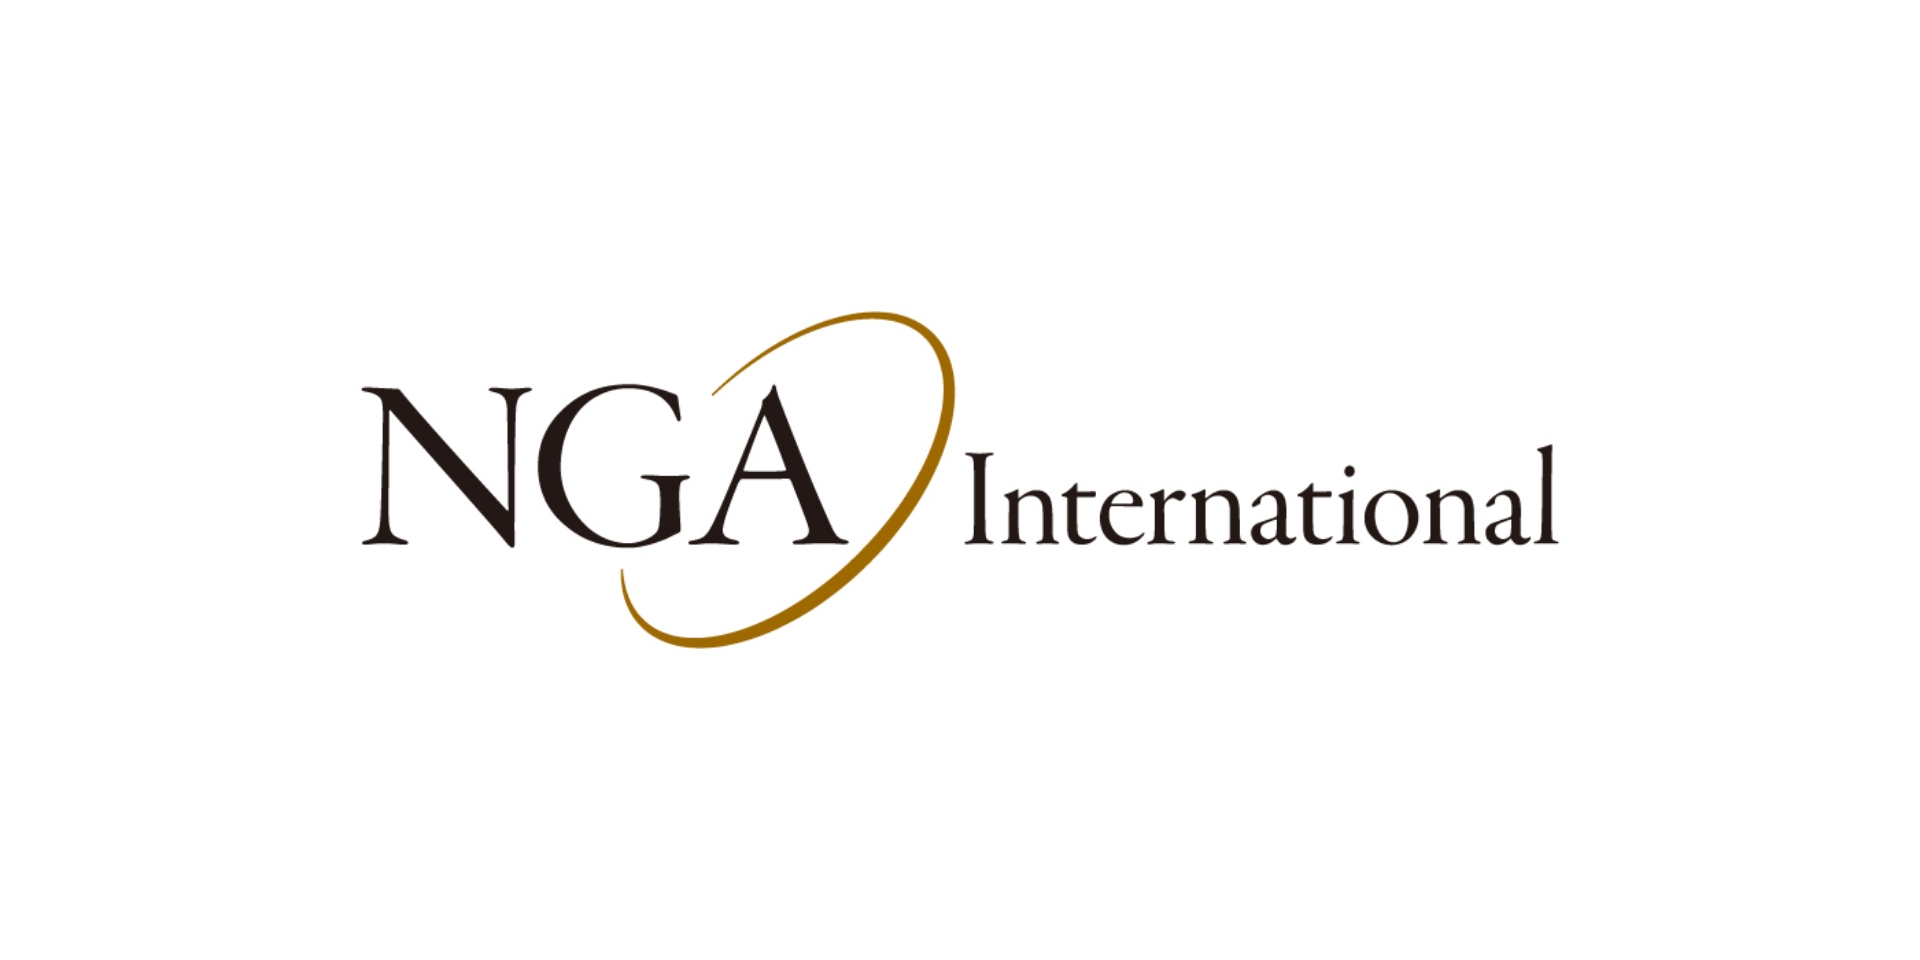 NGA International